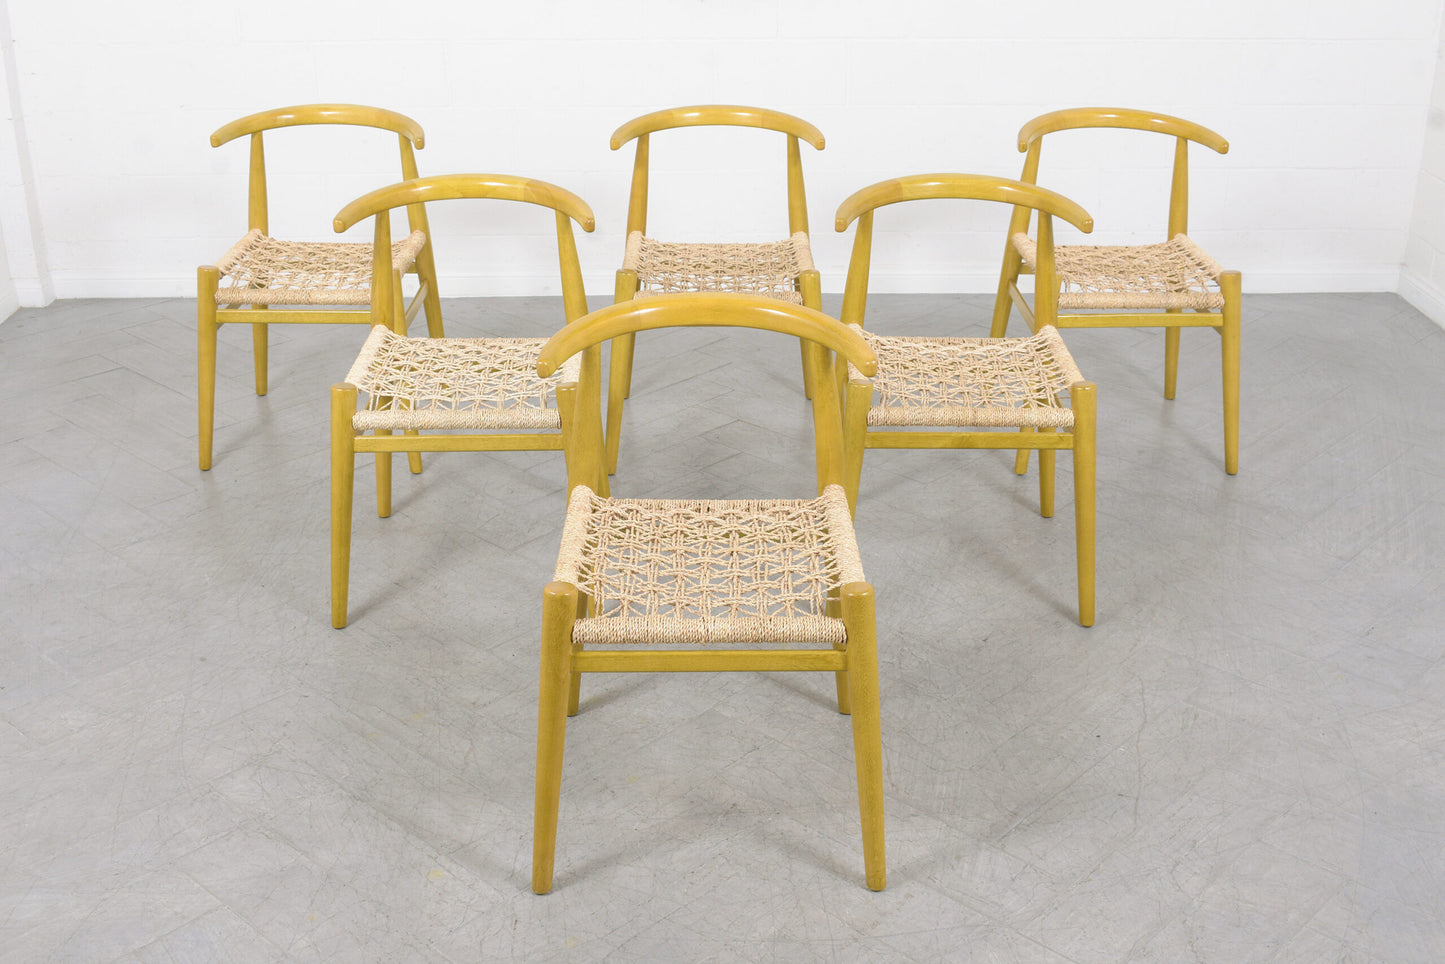 Set of 6 Vintage Teak Barrel-Back Dining Chairs